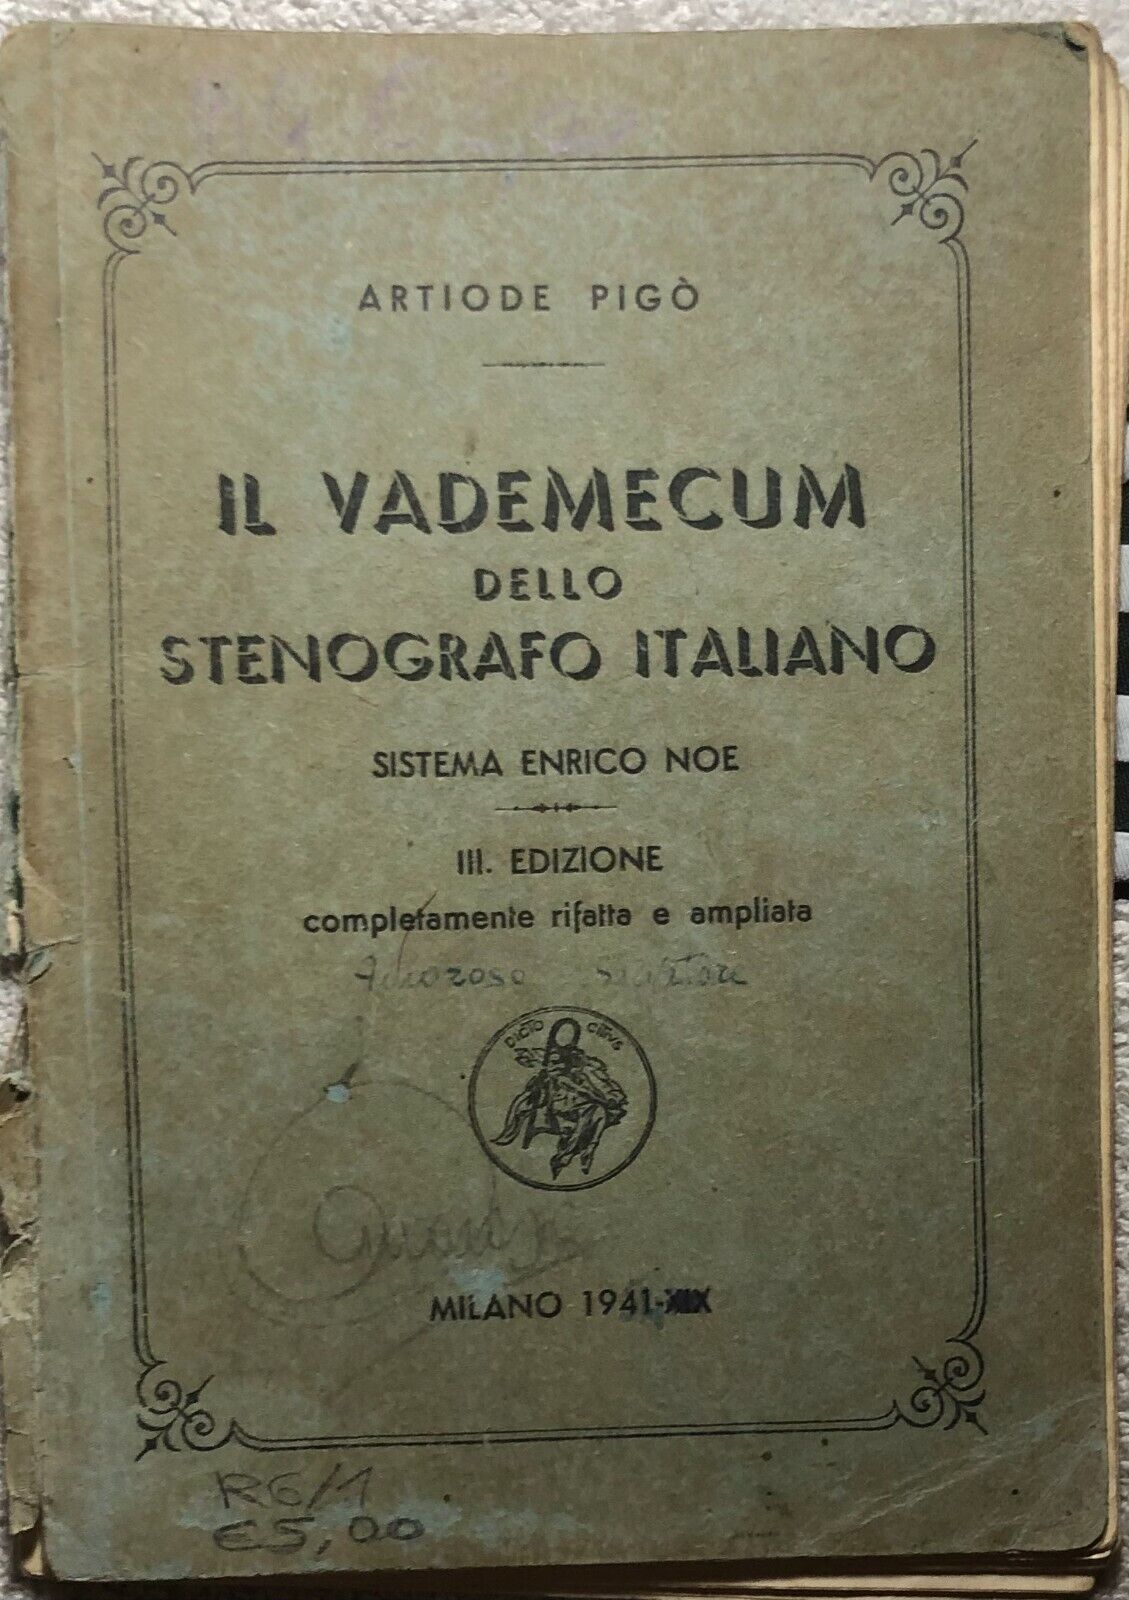 Il vademecum dello stenografo italiano di Artiode Pig?,  1941,  Sistema Enrico N